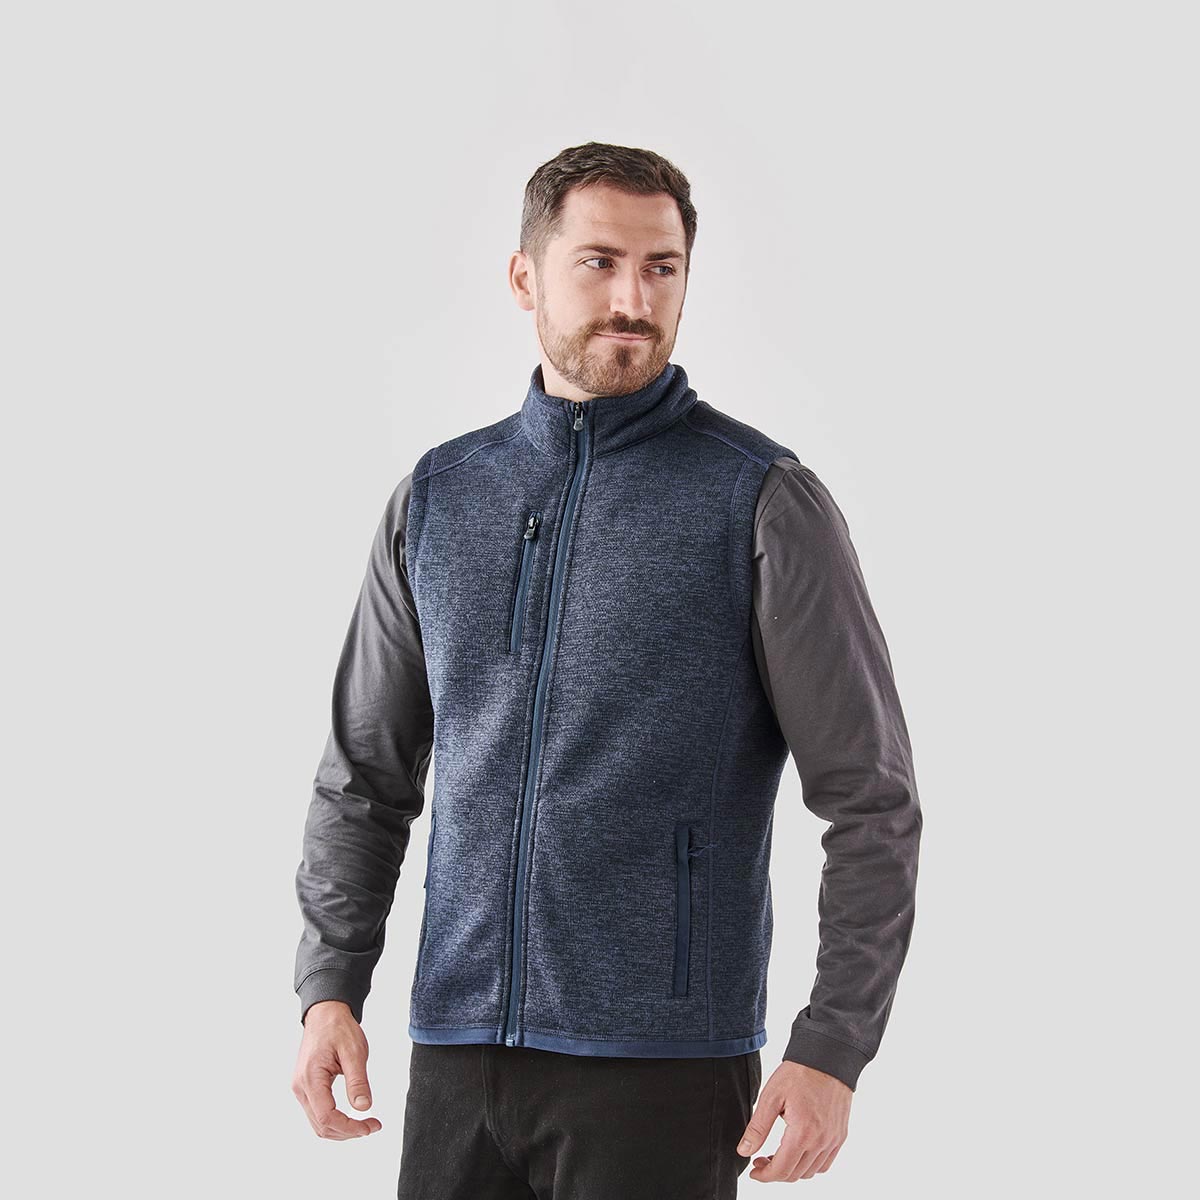 Avalanche full-zip fleece jacket